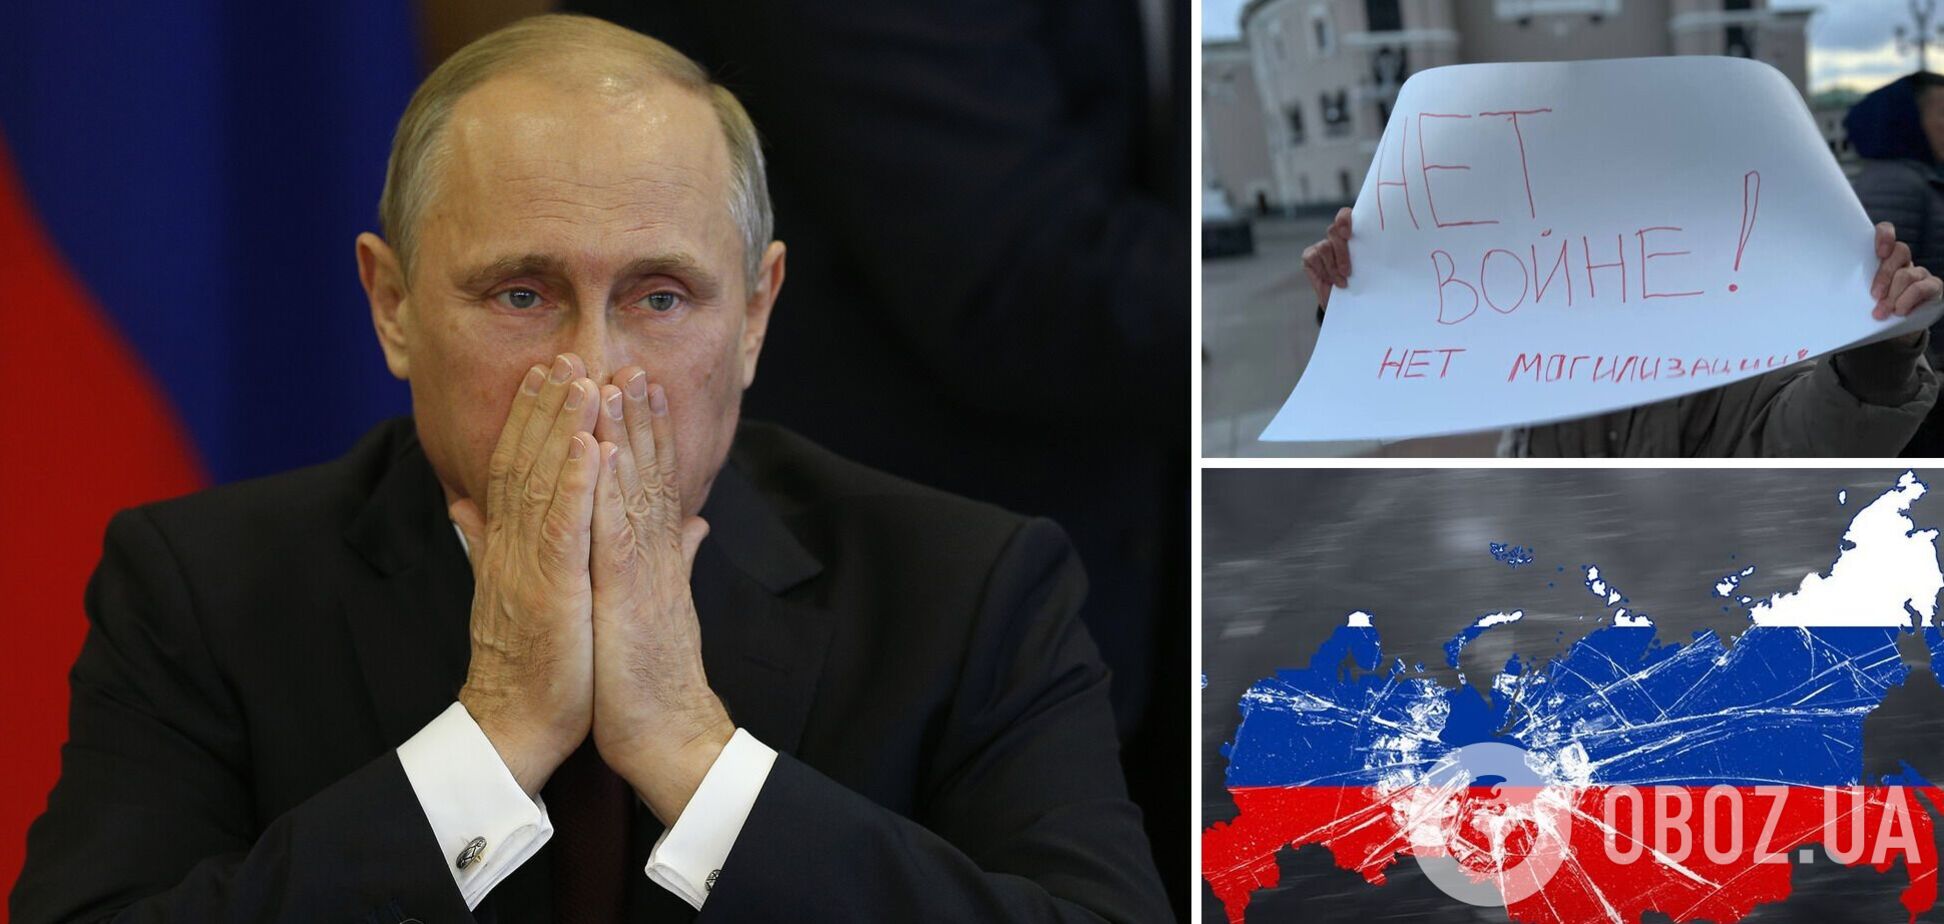 Путин впервые заговорил о полном развале России: будут московиты, уральцы и другие. Видео